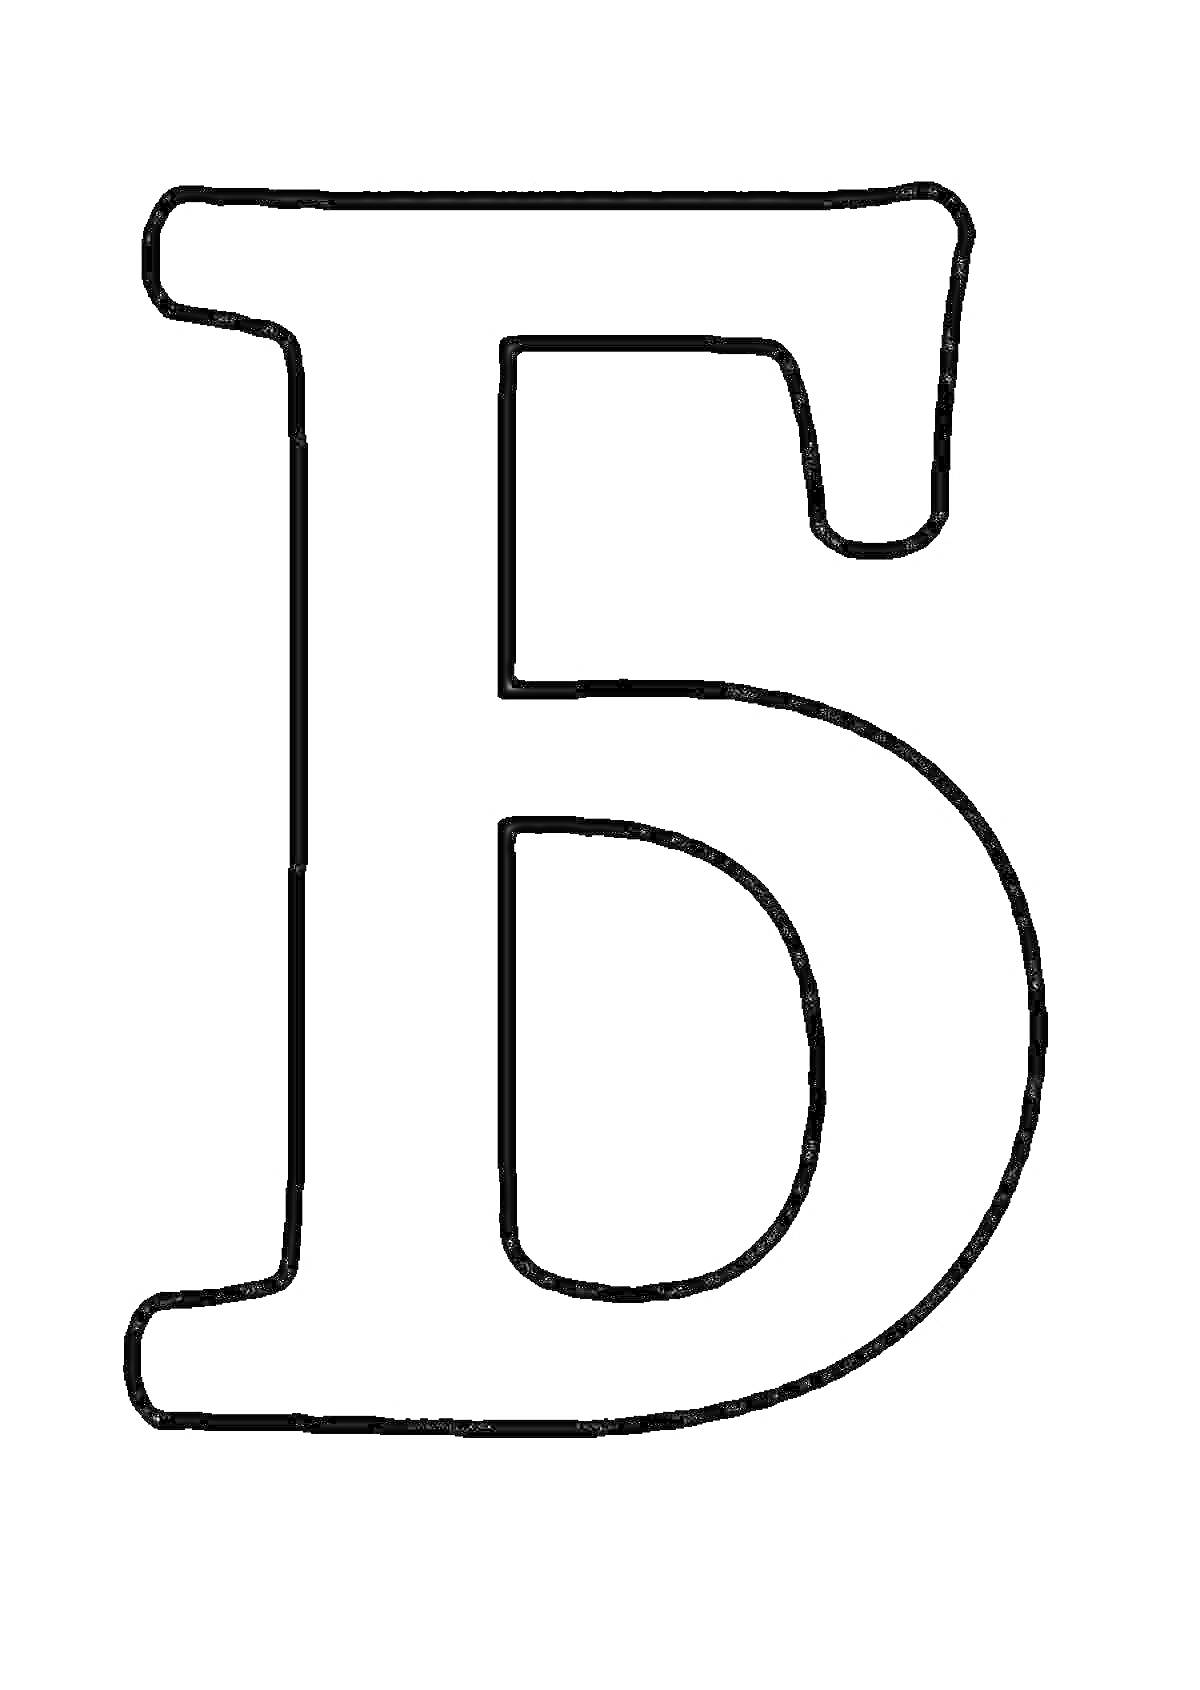 Раскраска Контур буквы Б для раскрашивания